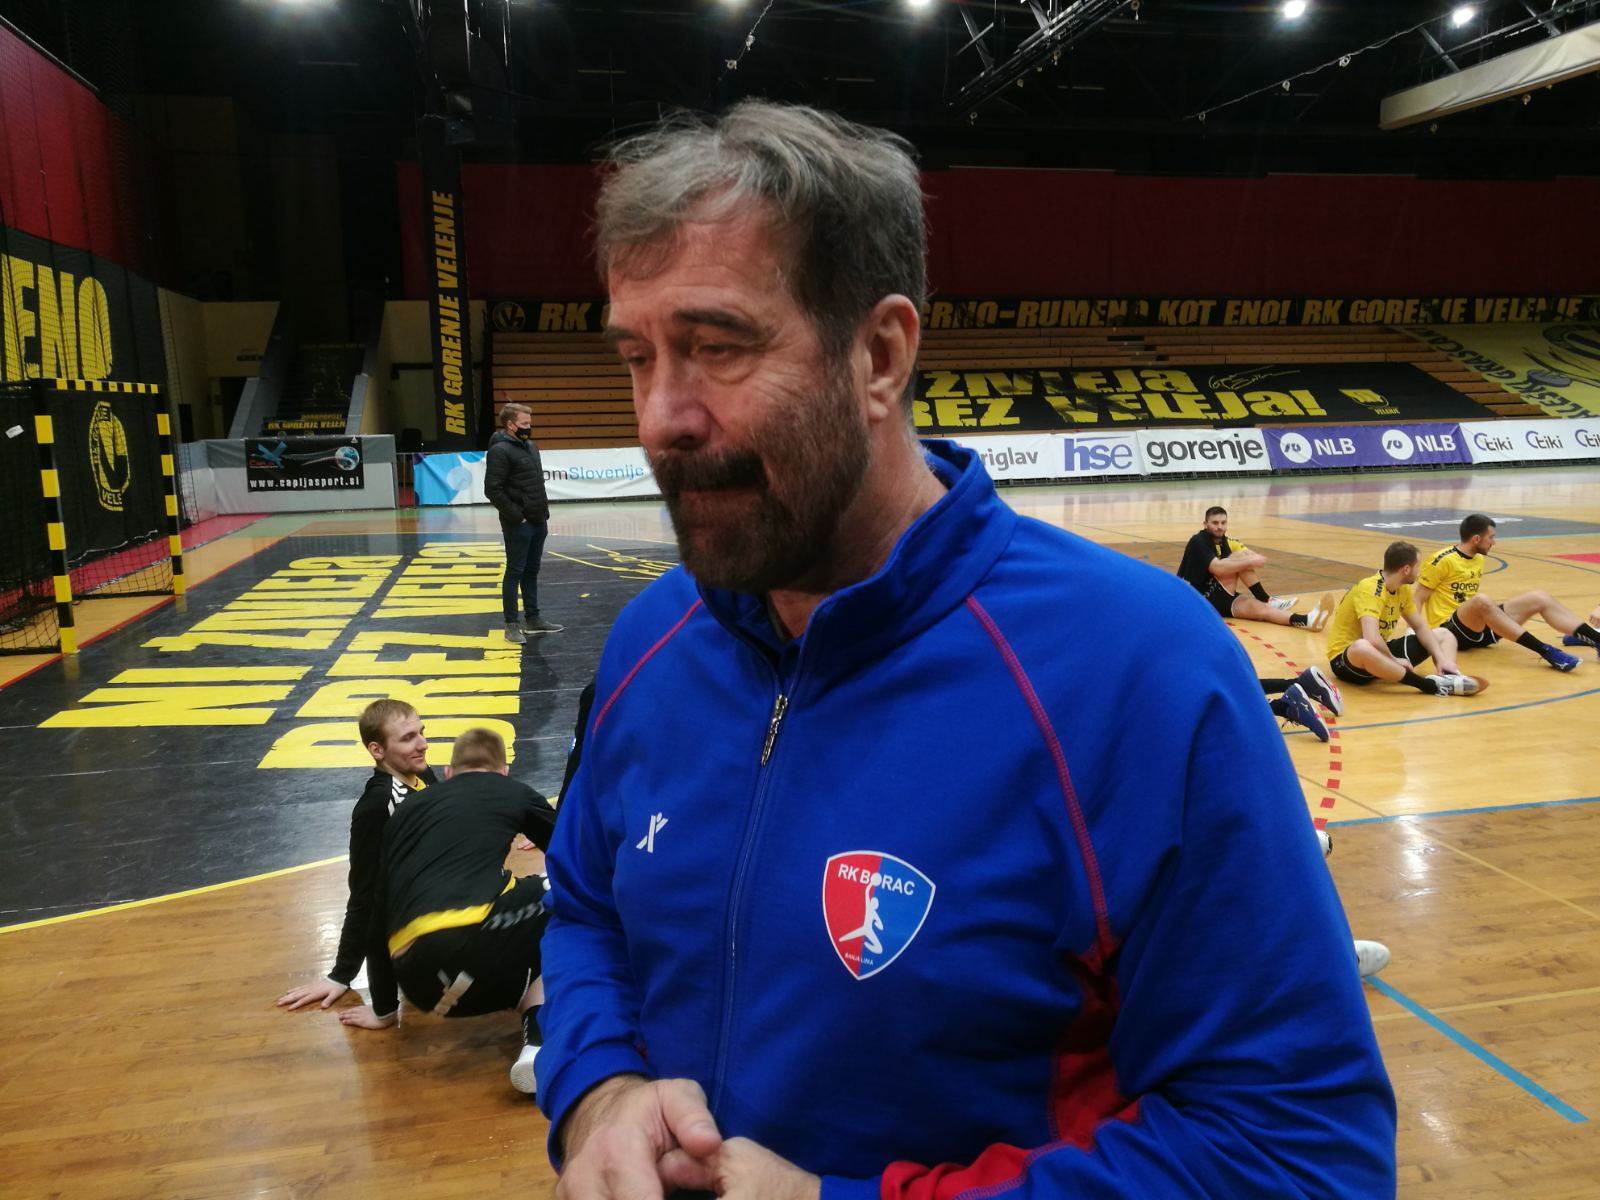  EHF Evropski kup Gorenje Borac izjava Veselin Vujović - Igrači kasno shvatili da mogu 